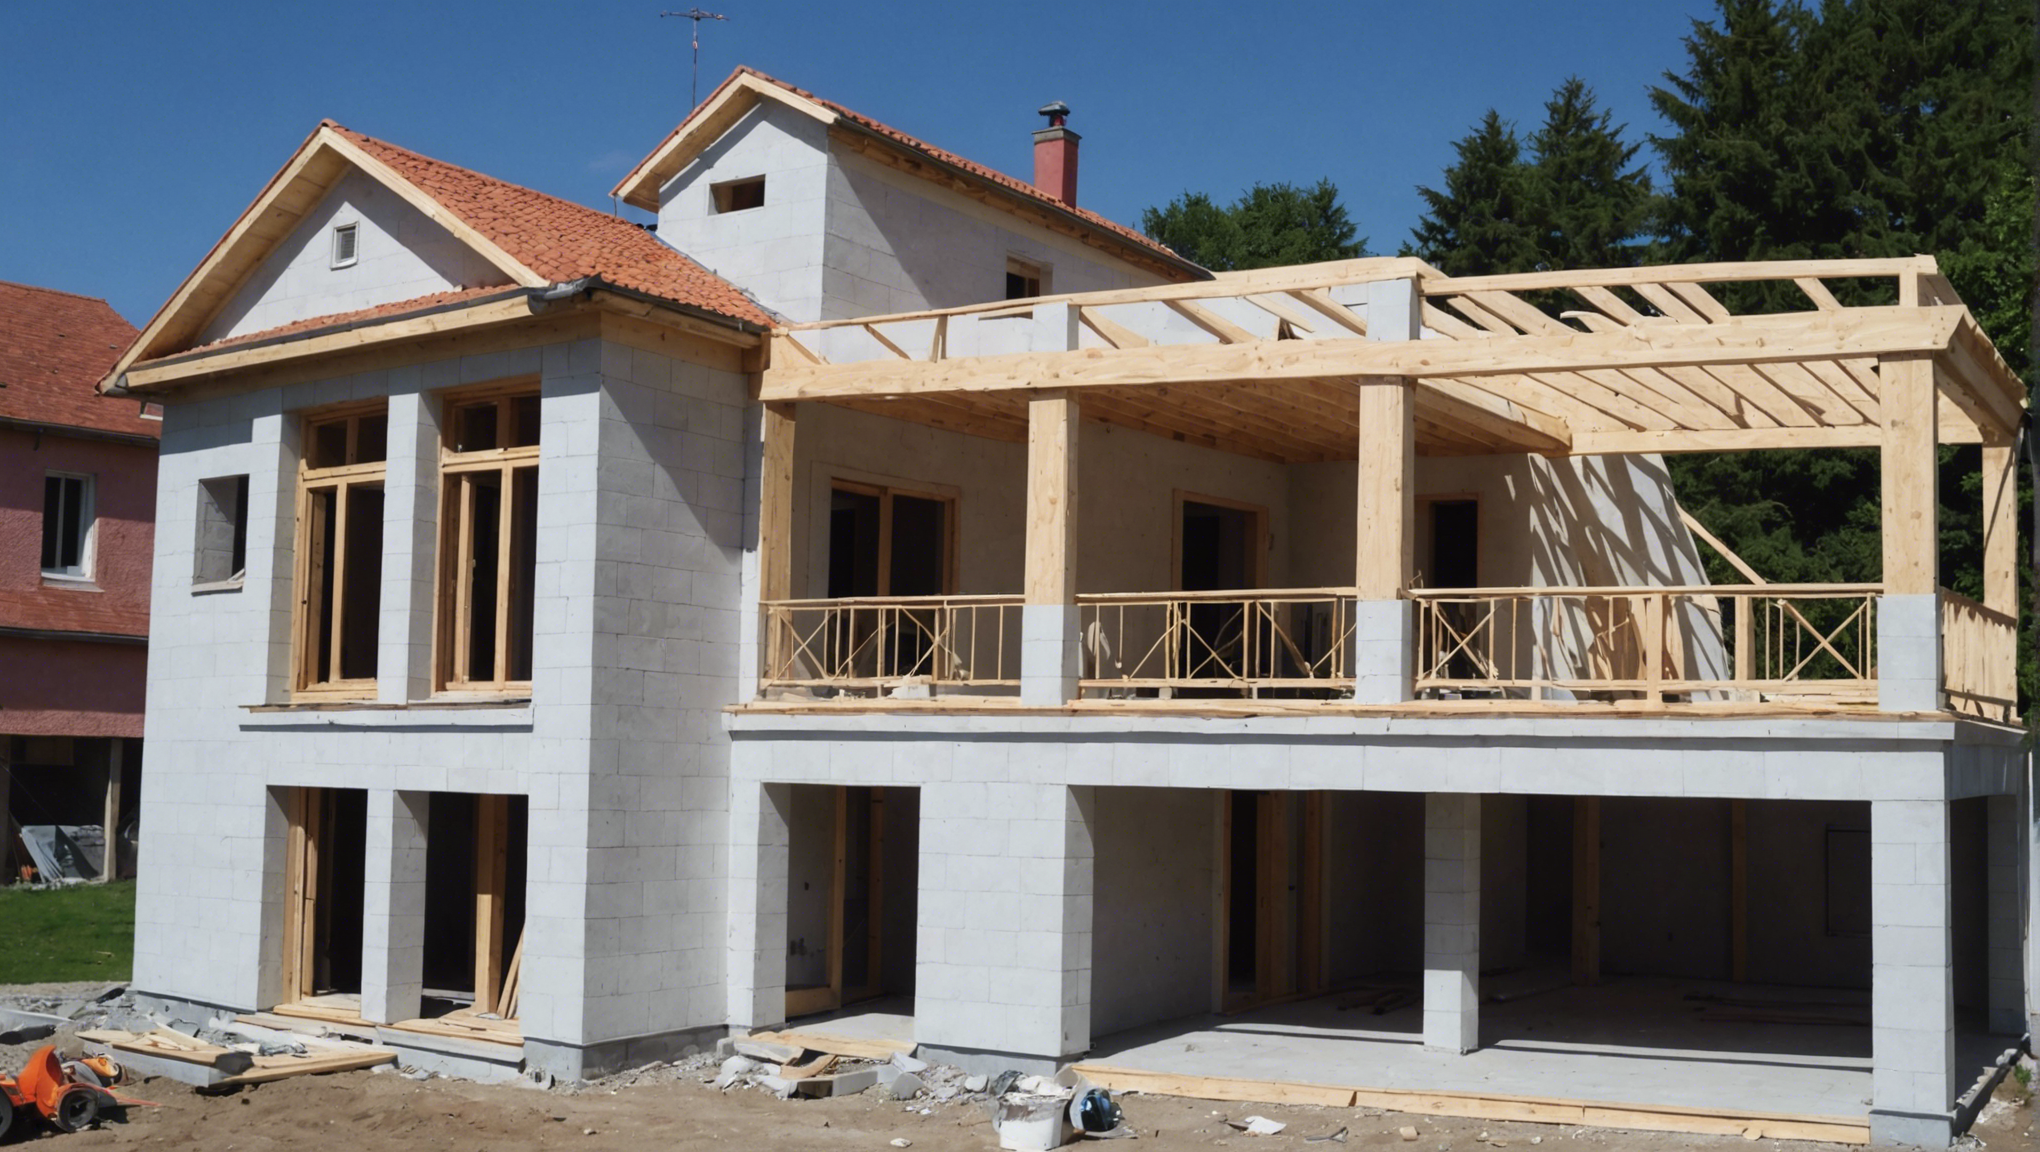 besoin d'un plâtrier/plaquiste pour la construction de votre maison ? contactez-nous pour des services de qualité et une expertise dans le domaine de la construction.